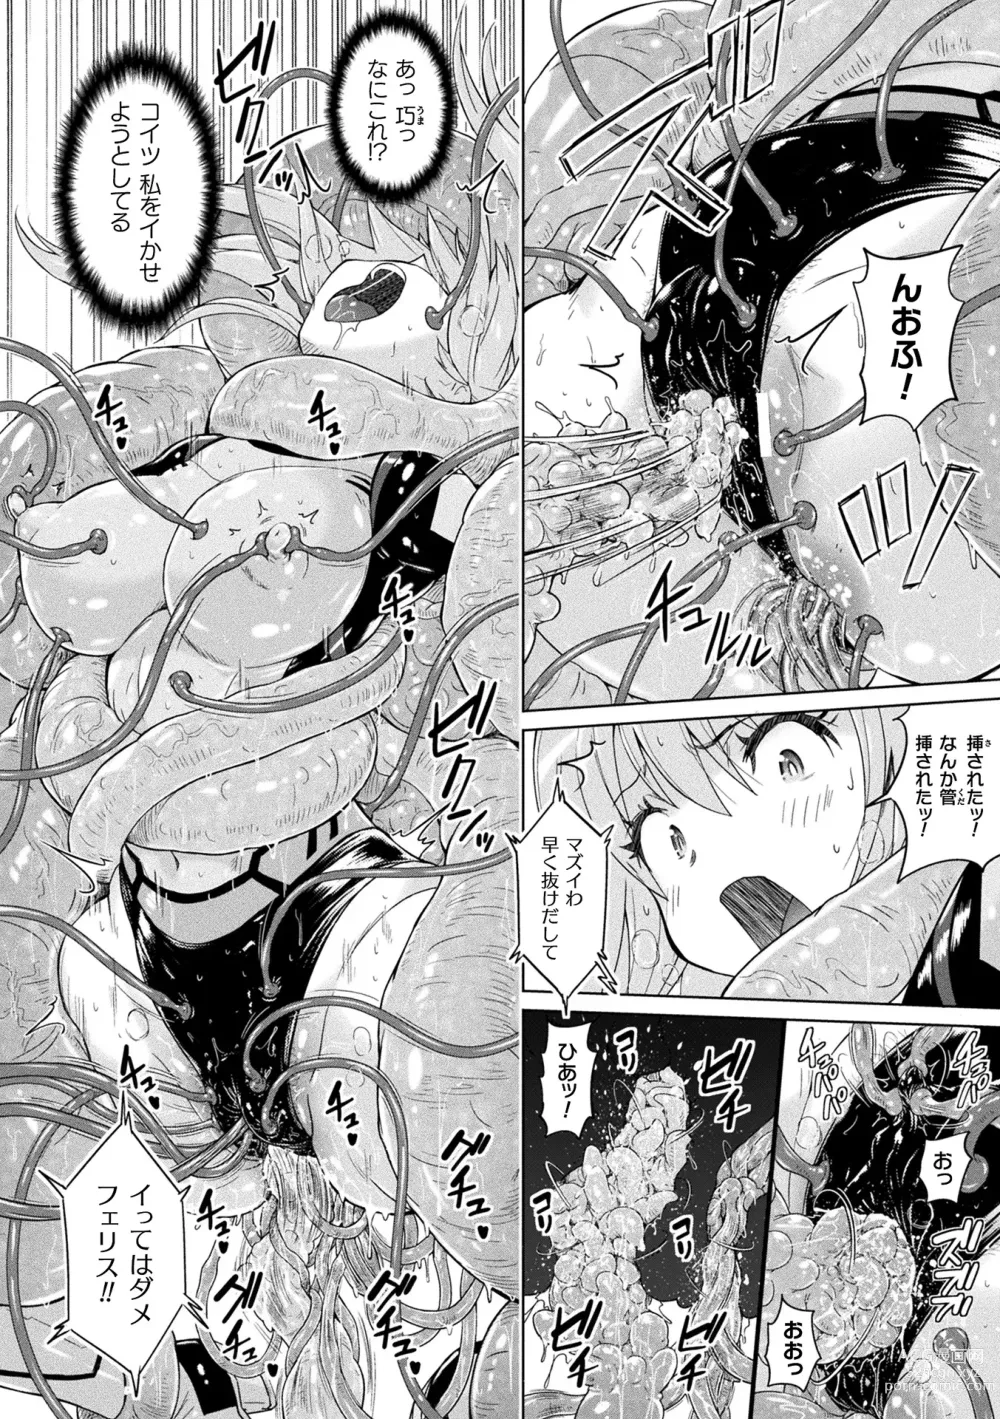 Page 16 of manga Picchiri Pantsism